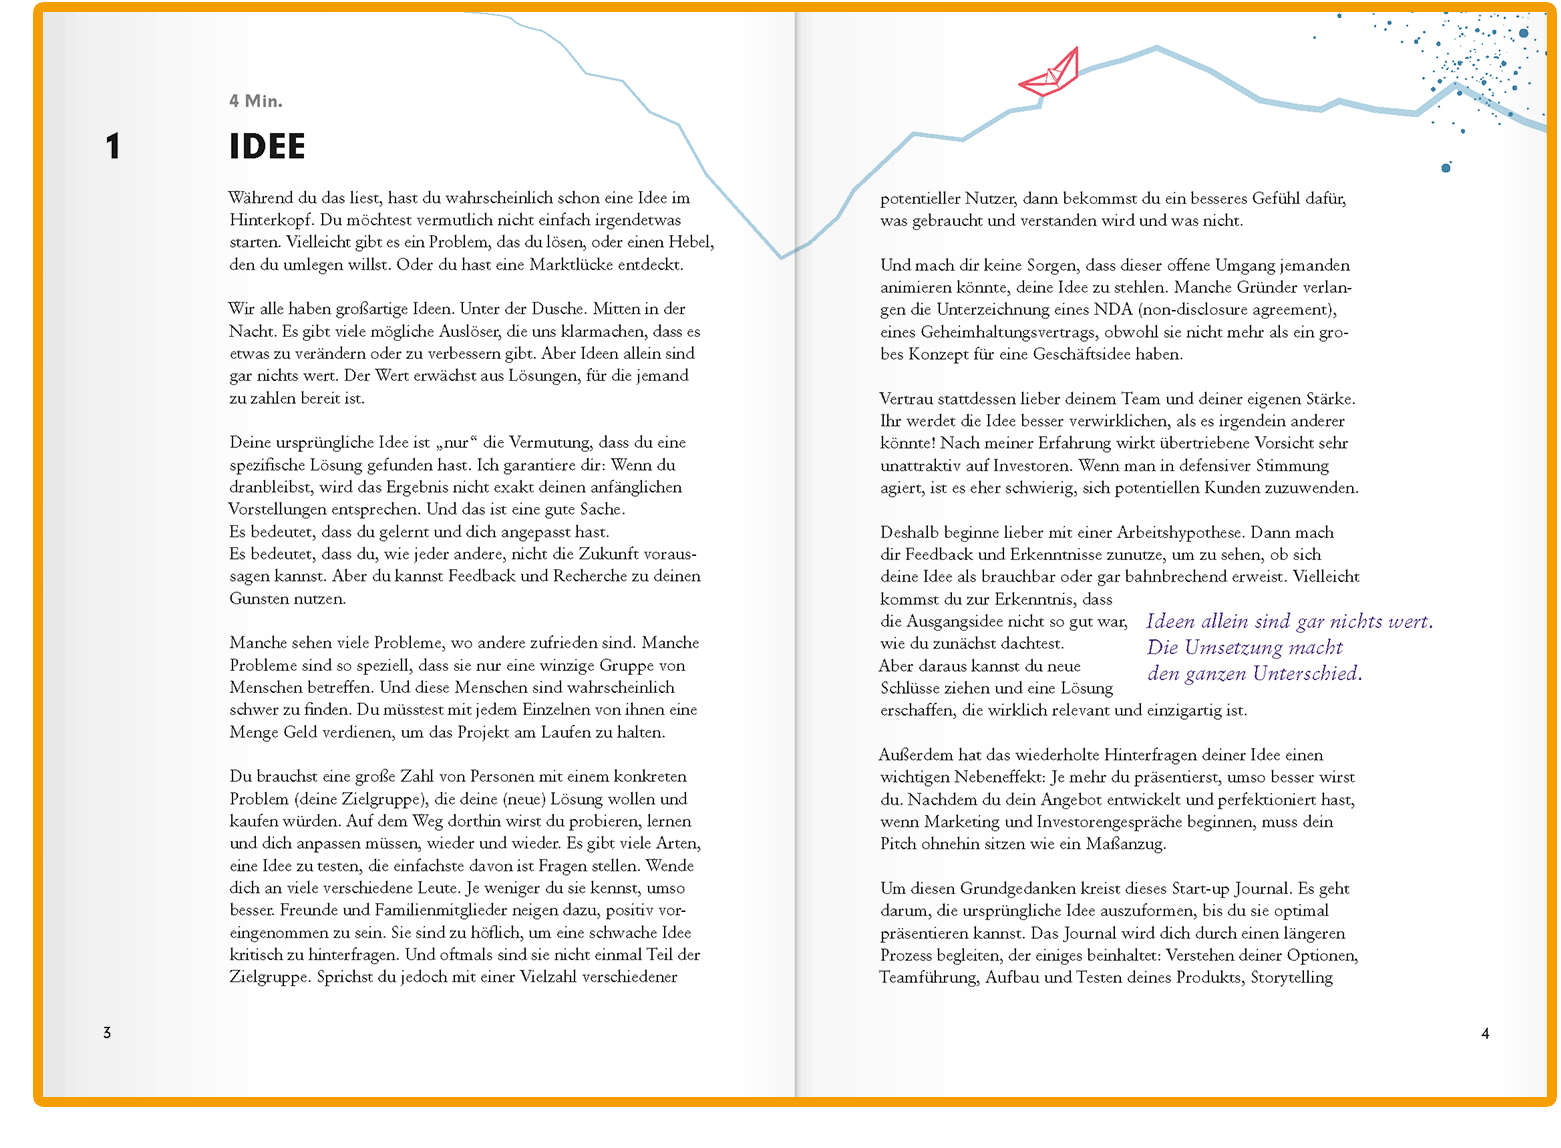 Start-up Journal Vorschau Kapitel 1: Idee